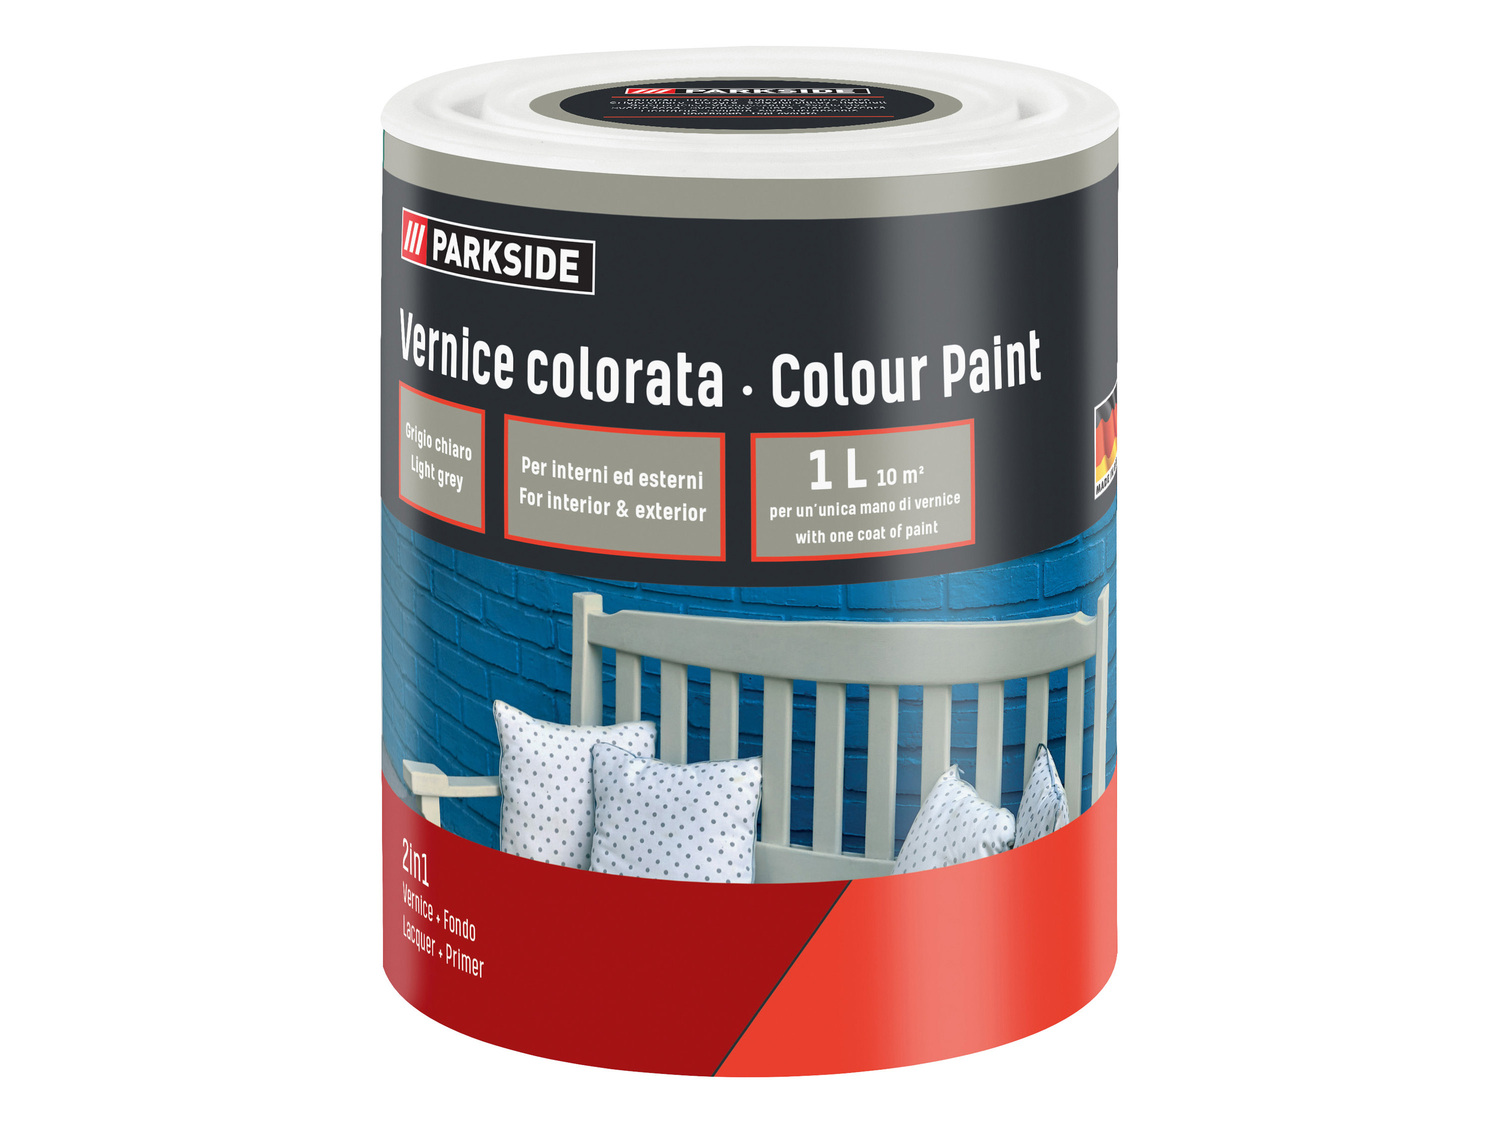 Vernice colorata, bianca o per lavagna, 1 L Parkside, prezzo 4.99 &#8364; 

Caratteristiche
 ...